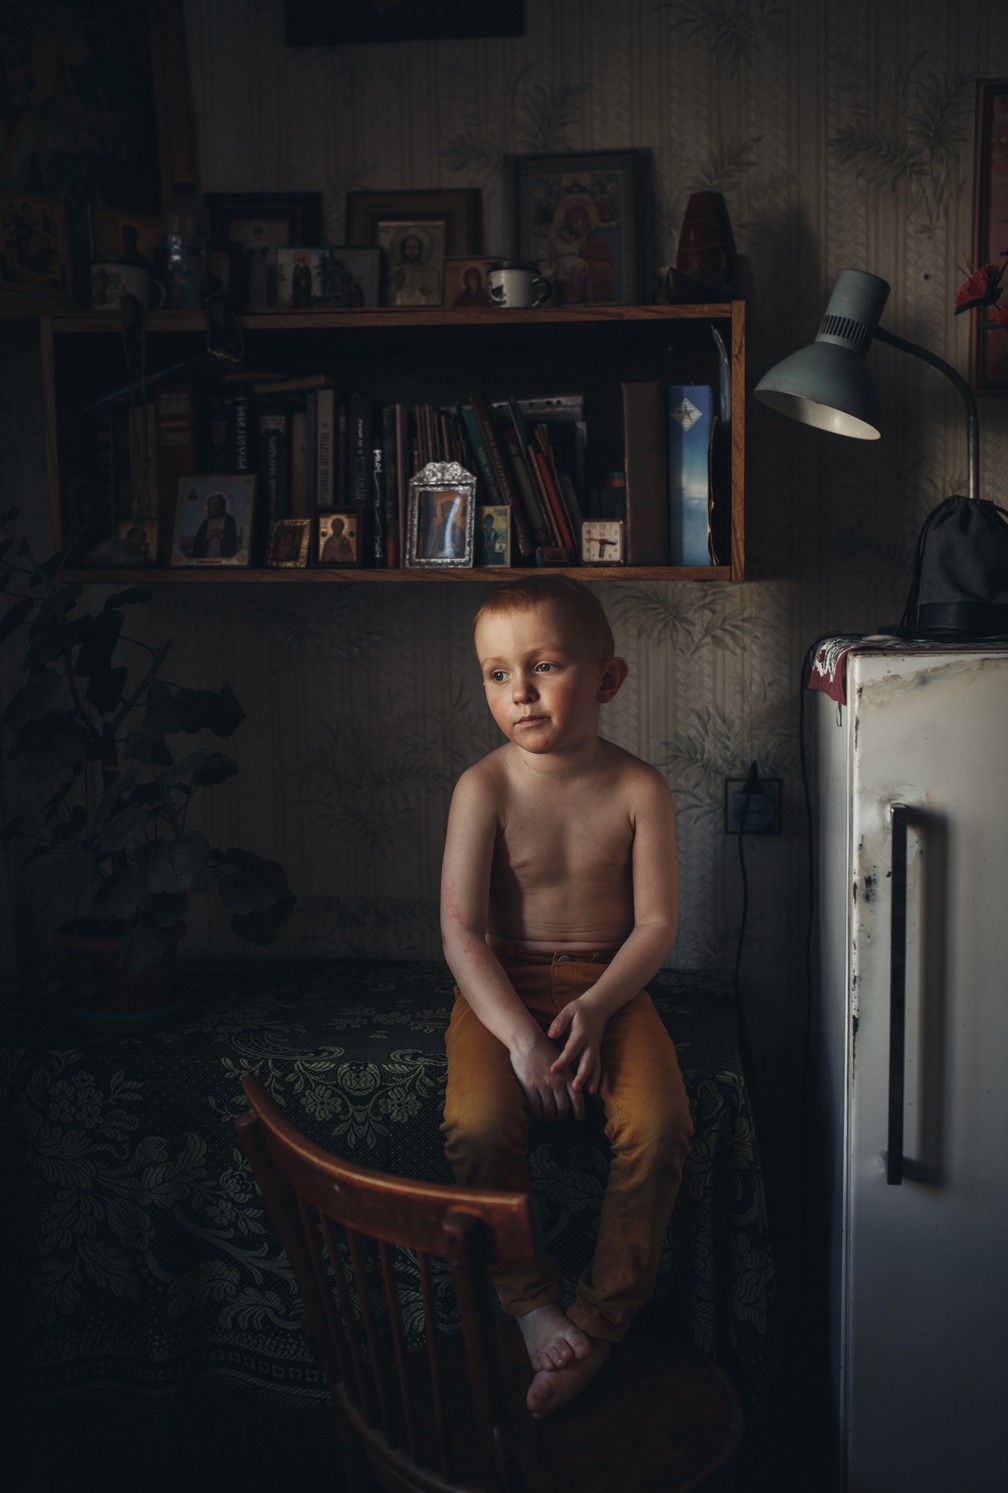 Retrato: 'Son', criança sentada em uma mesa enquanto observa o ambiente, perdido na contemplação. A fotografia mostra um outro lado da infância, de calma e reflexão — Foto: Lyudmila Sabanina (Rússia)/Sony World Photography Awards